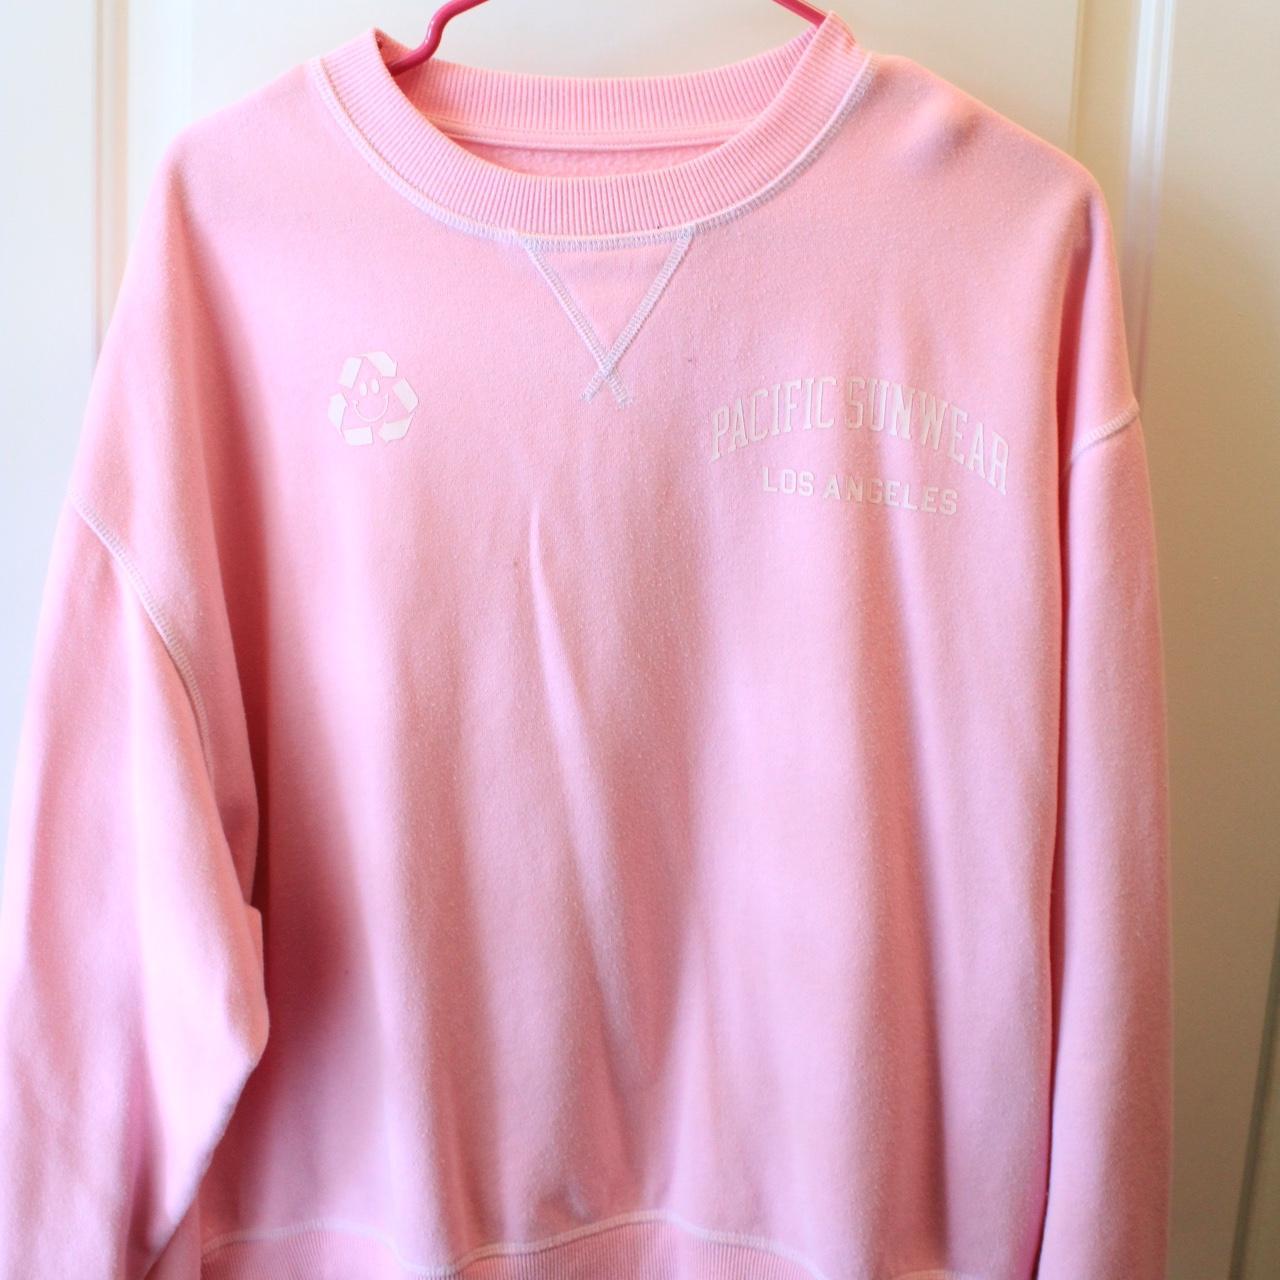 Pacsun Pink Sweatshirt Size Small (oversized) Soft & - Depop